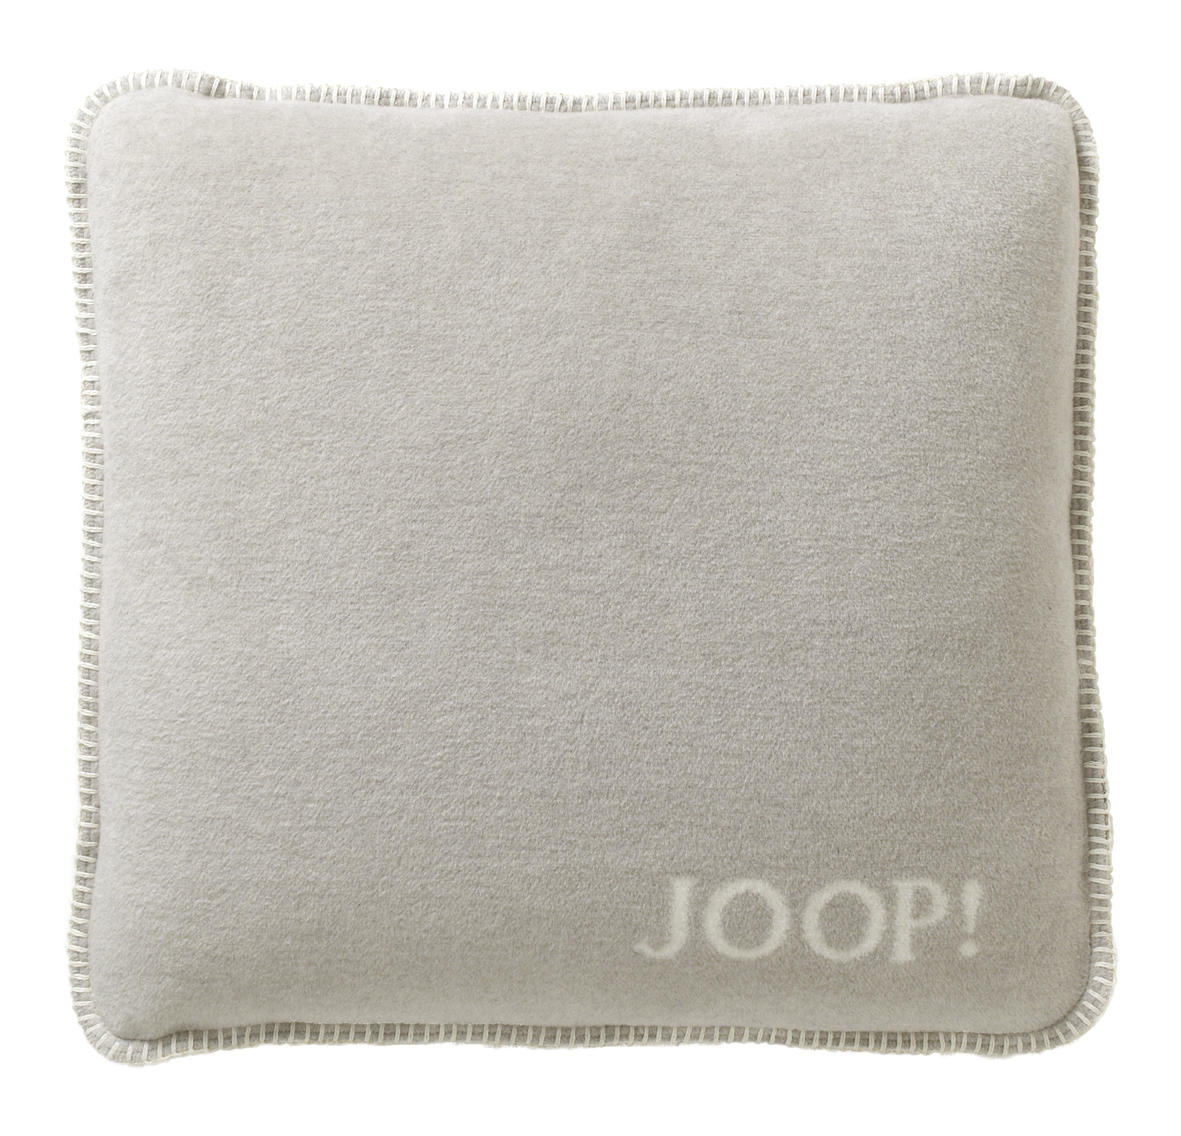 KISSENHÜLLE Uni Doubleface 50/50 cm  - Beige/Weiß, Design, Textil (50/50cm) - Joop!